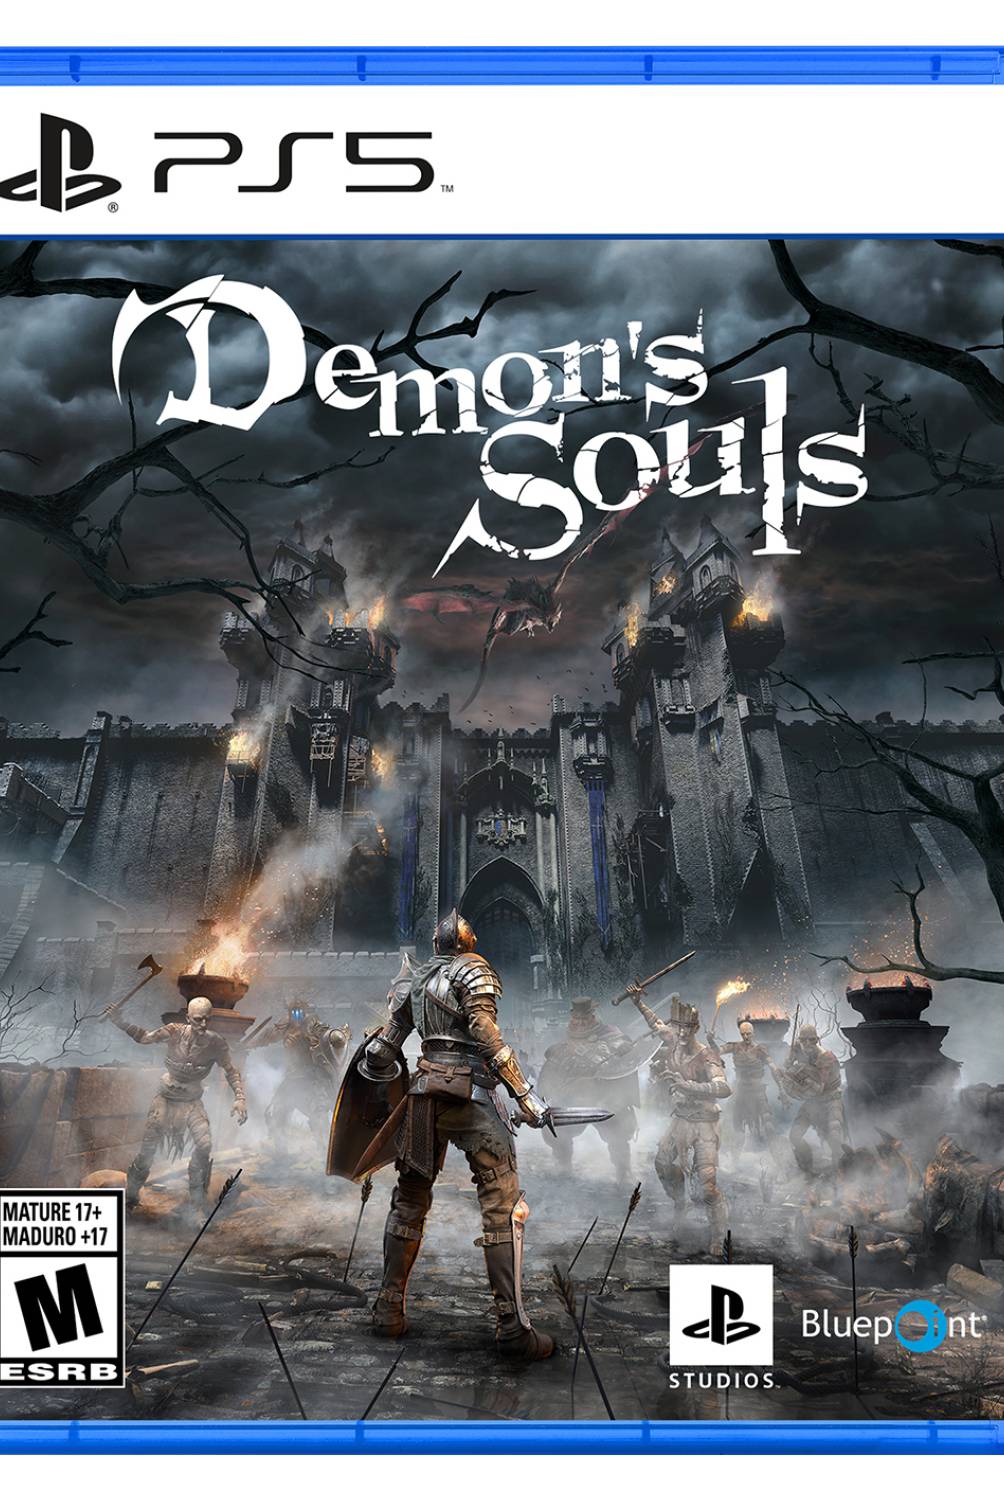 PLAYSTATION - Demos Souls Videojuego Ps5 Playstation